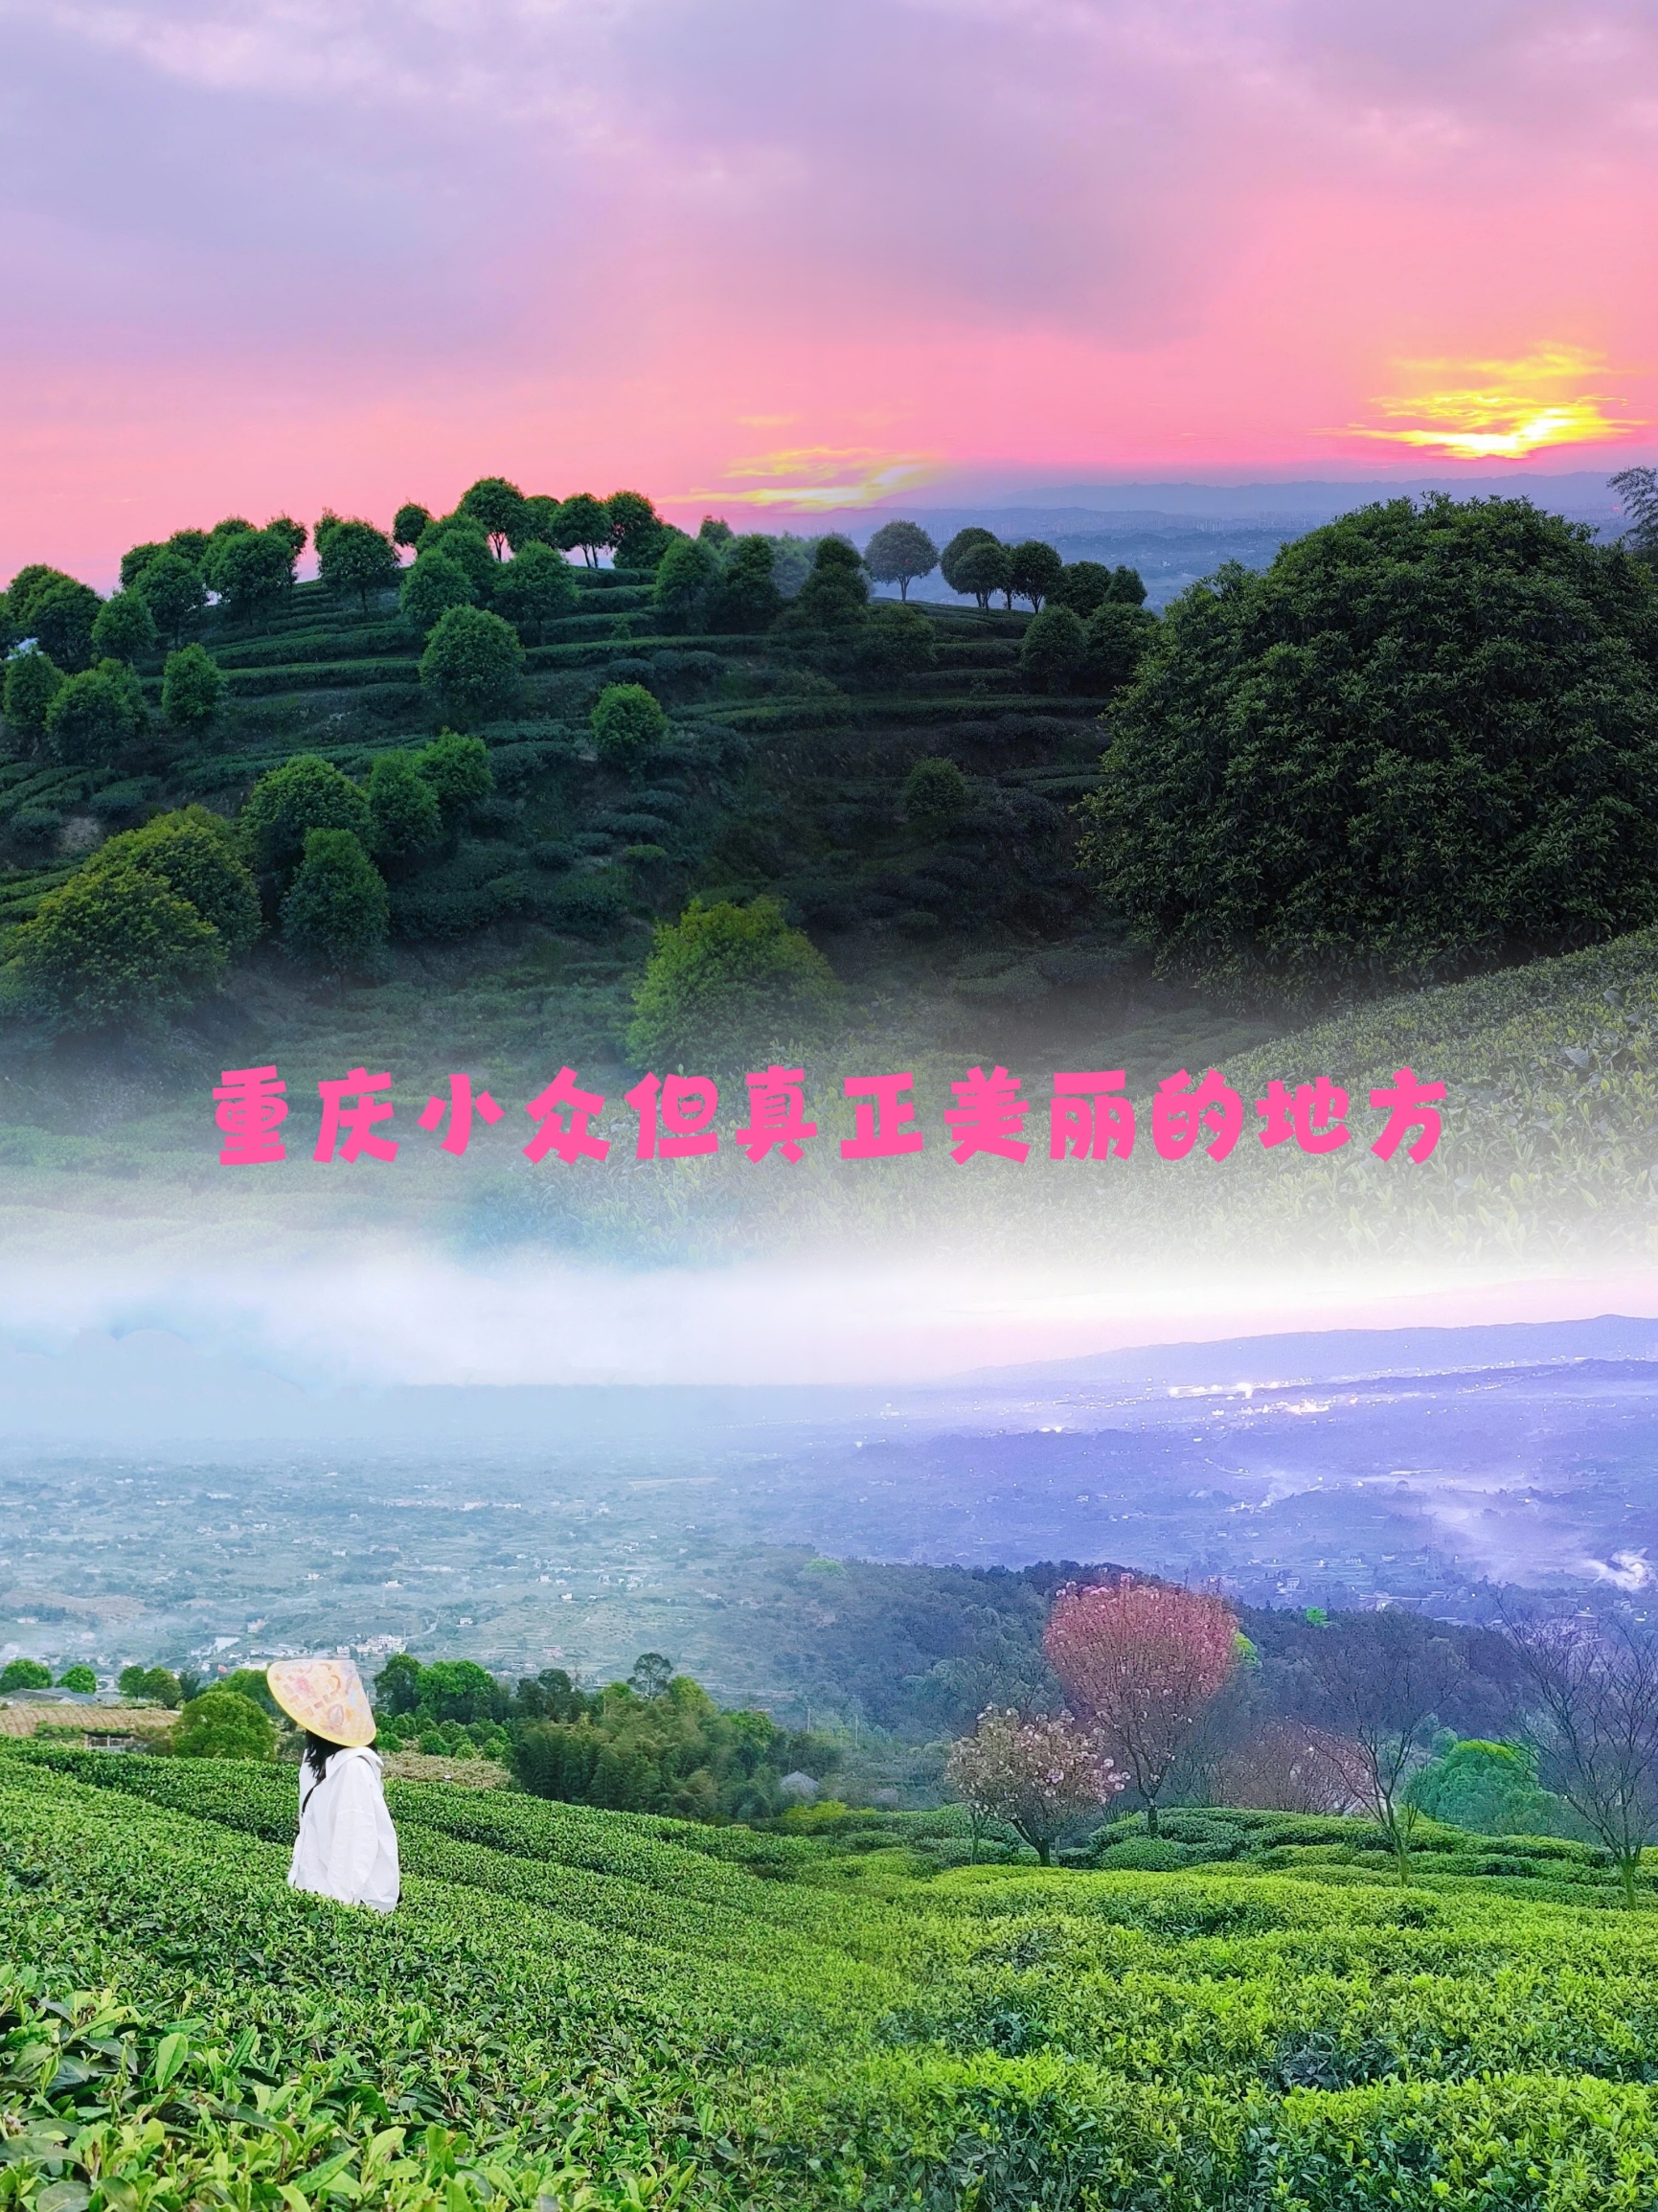 没想到在重庆能看到类似的场景 幸运的是，在茶山上遇到了超级美丽的日落️️ 这里的茶山与茶山相连，几座